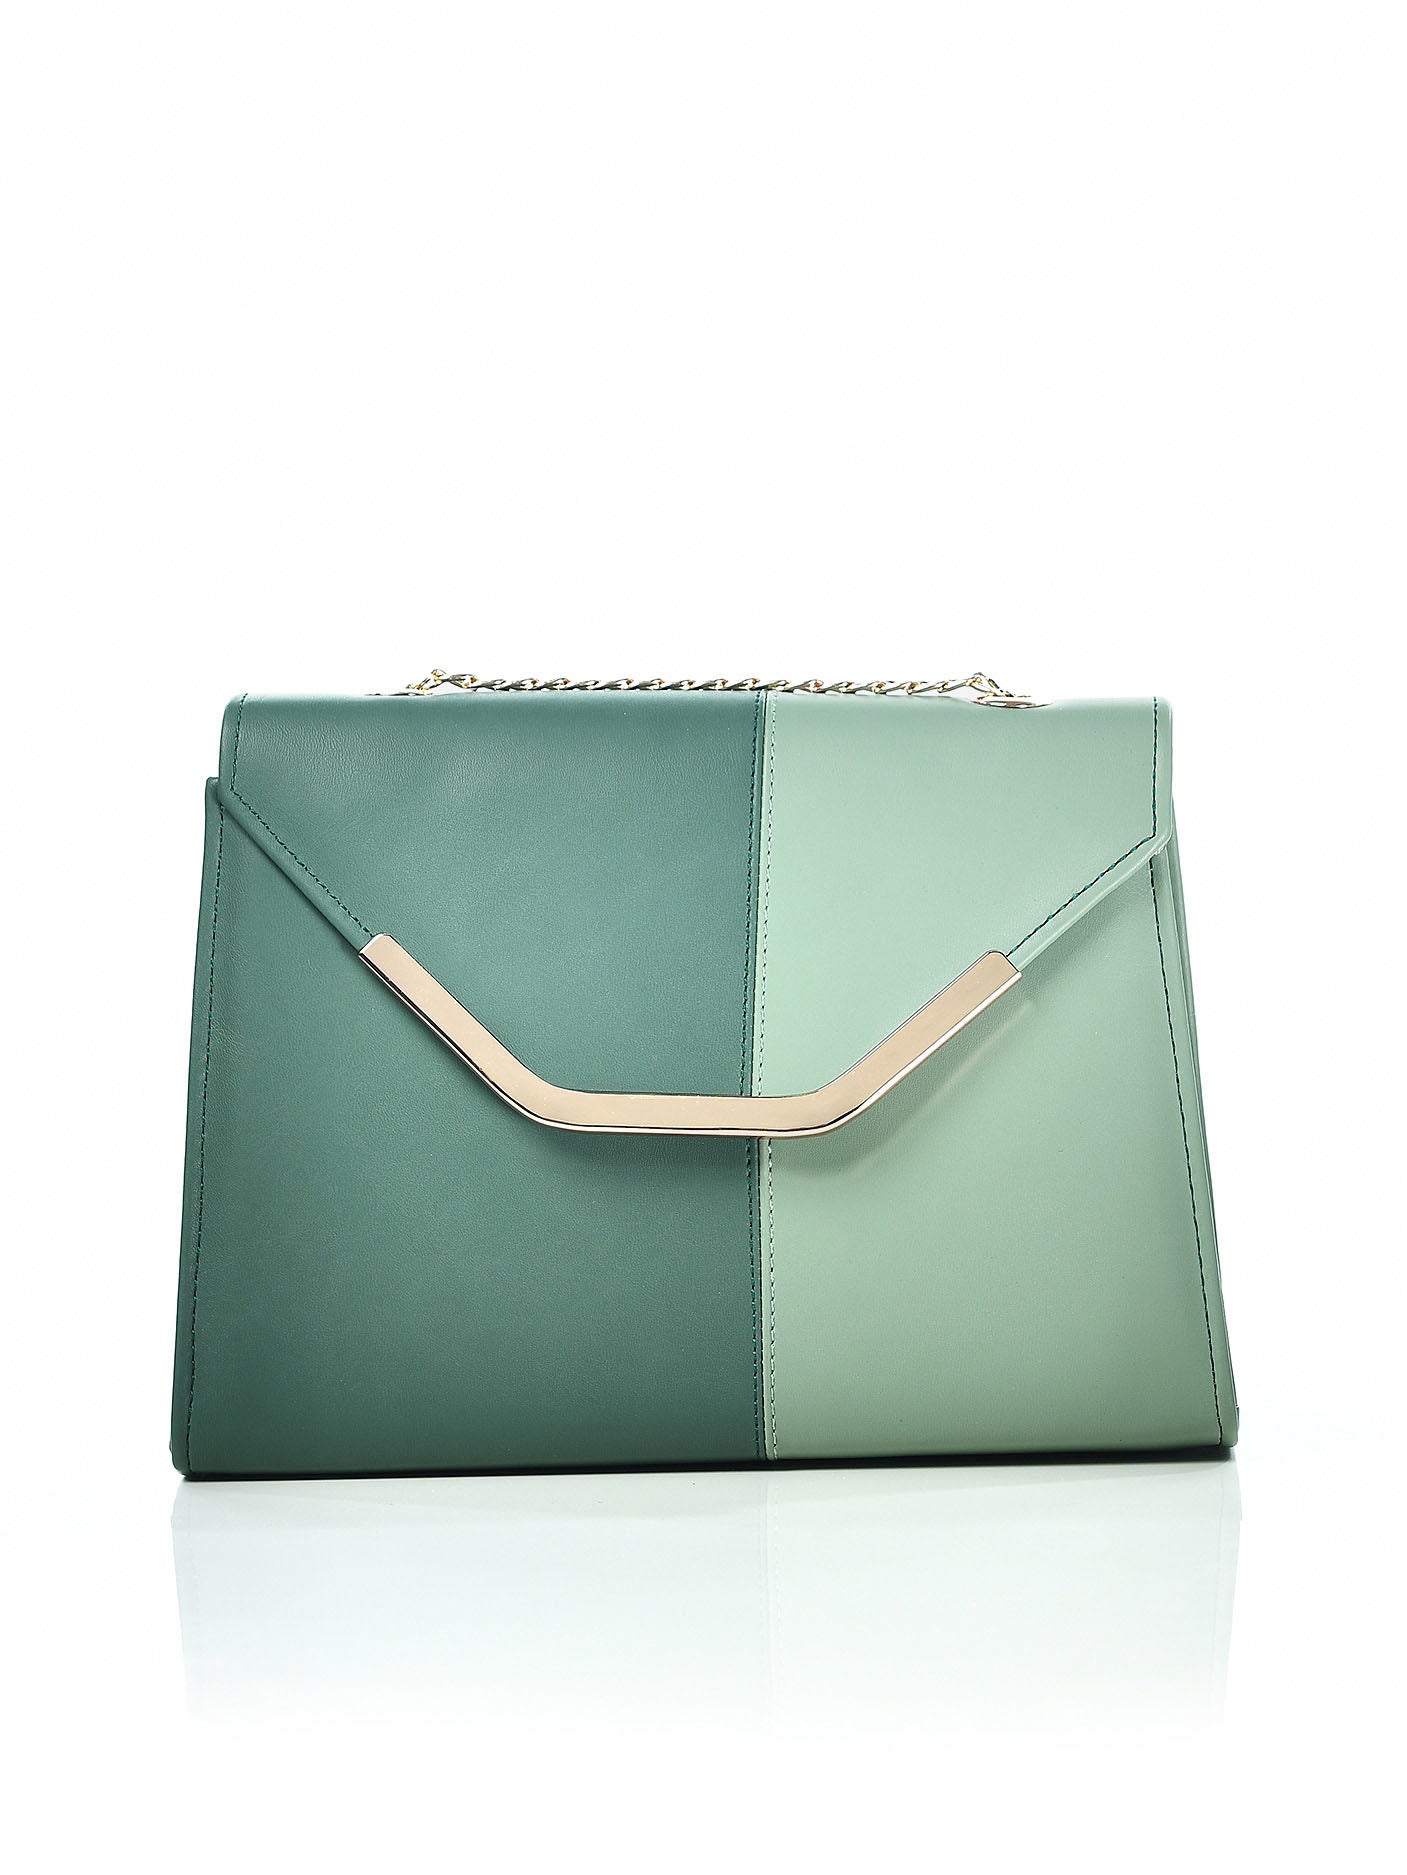 envelope-shaped-hand-bag